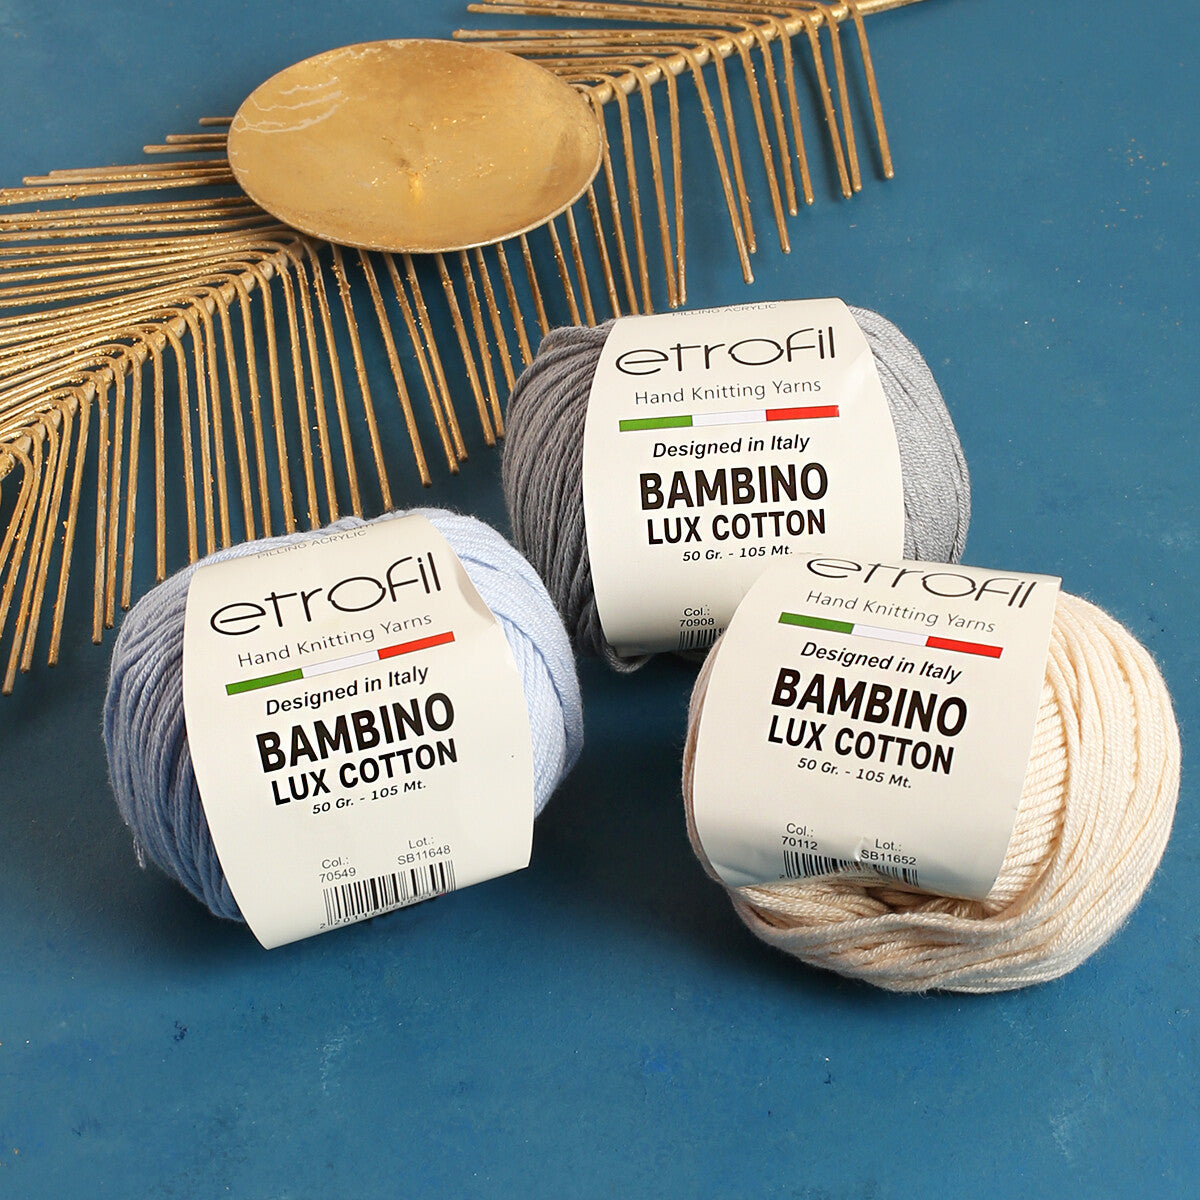 Etrofil Bambino Lux Cotton Yarn, Light Yellow - 70218